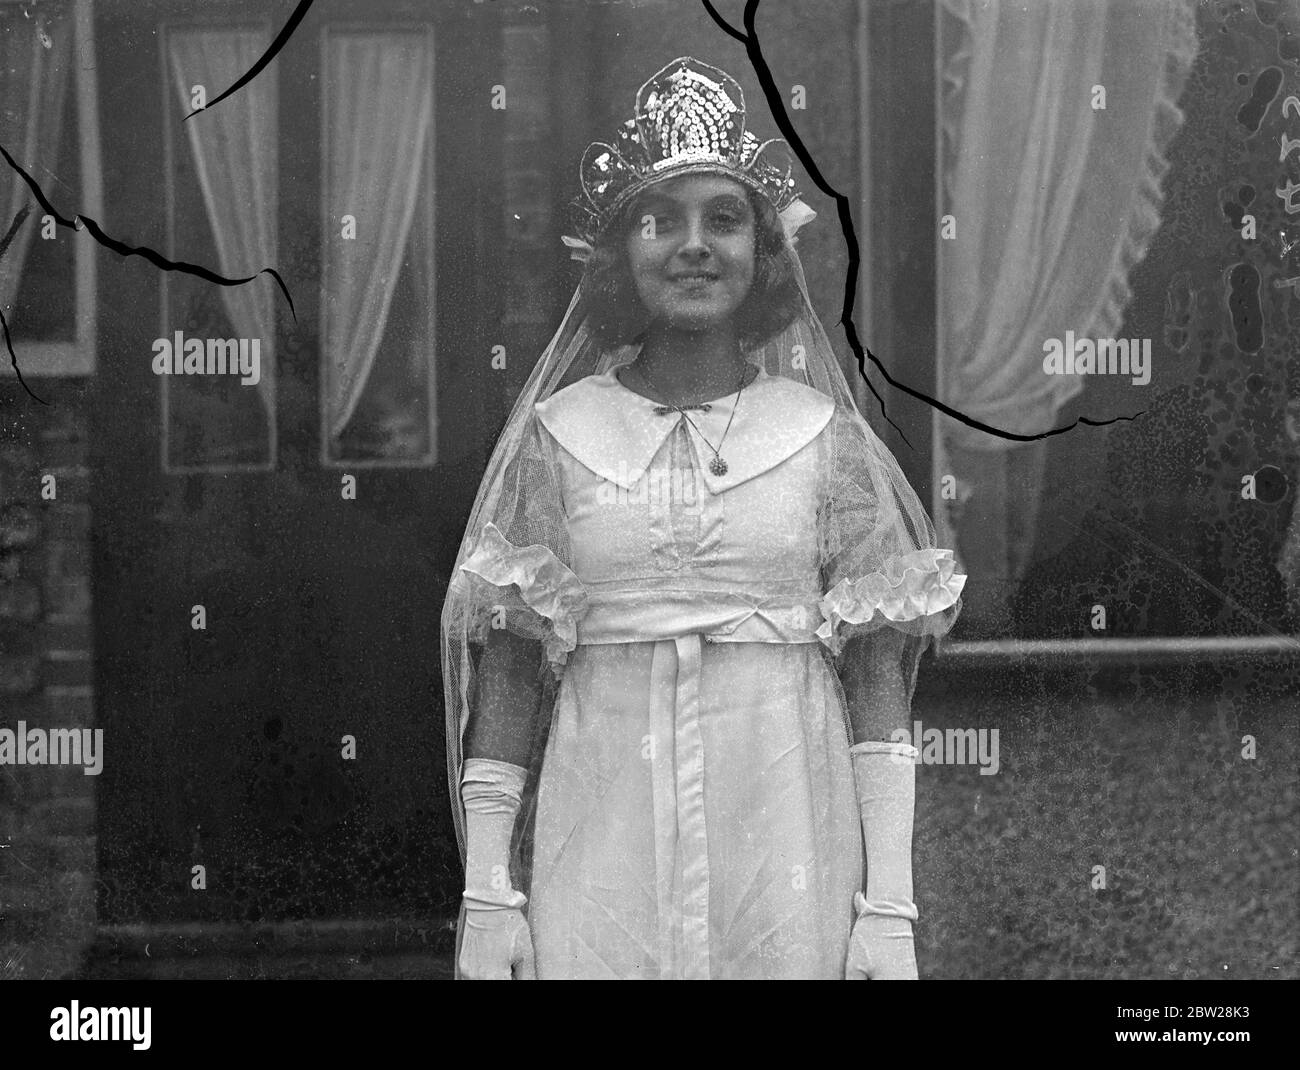 14 anni, come May Queen of England nel 1938. Flossie Boggin, di 14 anni, di Grove Park, è stata scelta come la Regina di Maggio d'Inghilterra per il 1938 da Joseph Deeley, organizzatore della Merrie England Society. Sarà incoronata su Hayes Common, Kent, il giorno di maggio, quando regine provenienti da tutta l'Inghilterra sarà presente a lei. L'anno scorso. Flossie era Principessa delle fate alle celebrazioni del giorno di maggio, e l'anno prima era Regina di Grove Park. Una delle sue presenze come May Queen of England sarà ha sette anni fratello, Malcolm Boggin. Flossie è una ragazza di borsa di studio di una Londra del sud-est, t Foto Stock